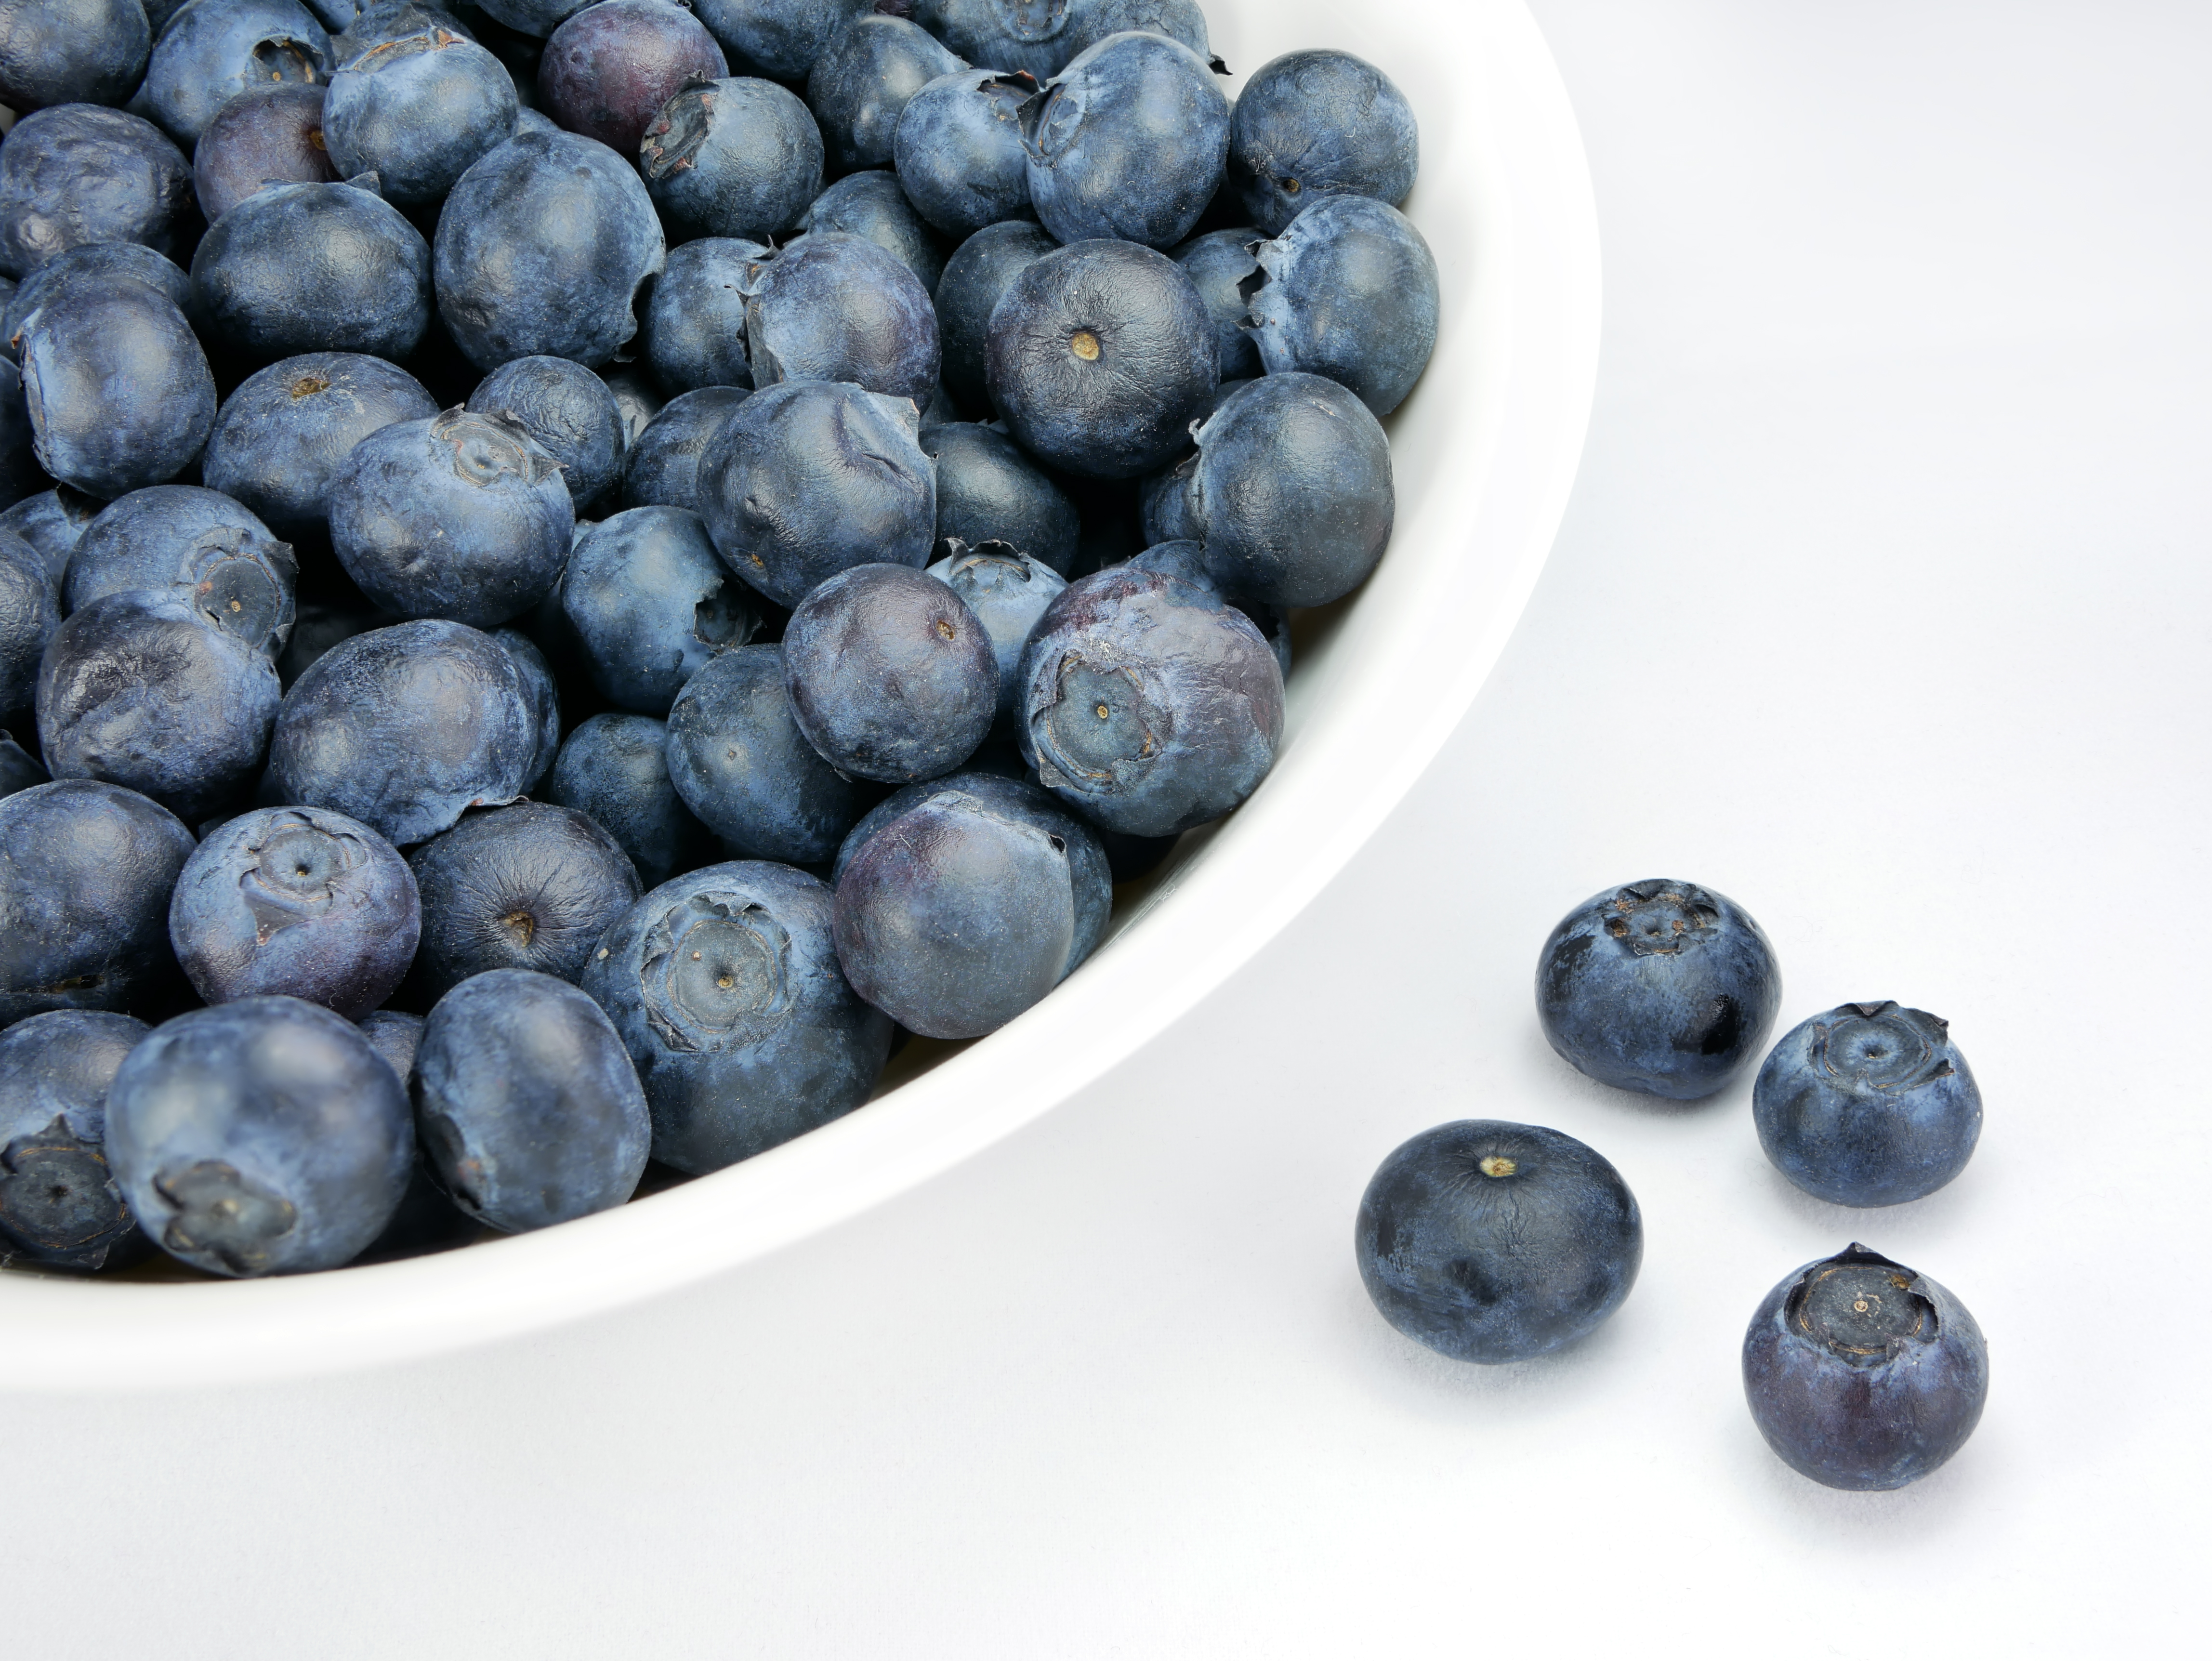 Blueberry - Wikipedia